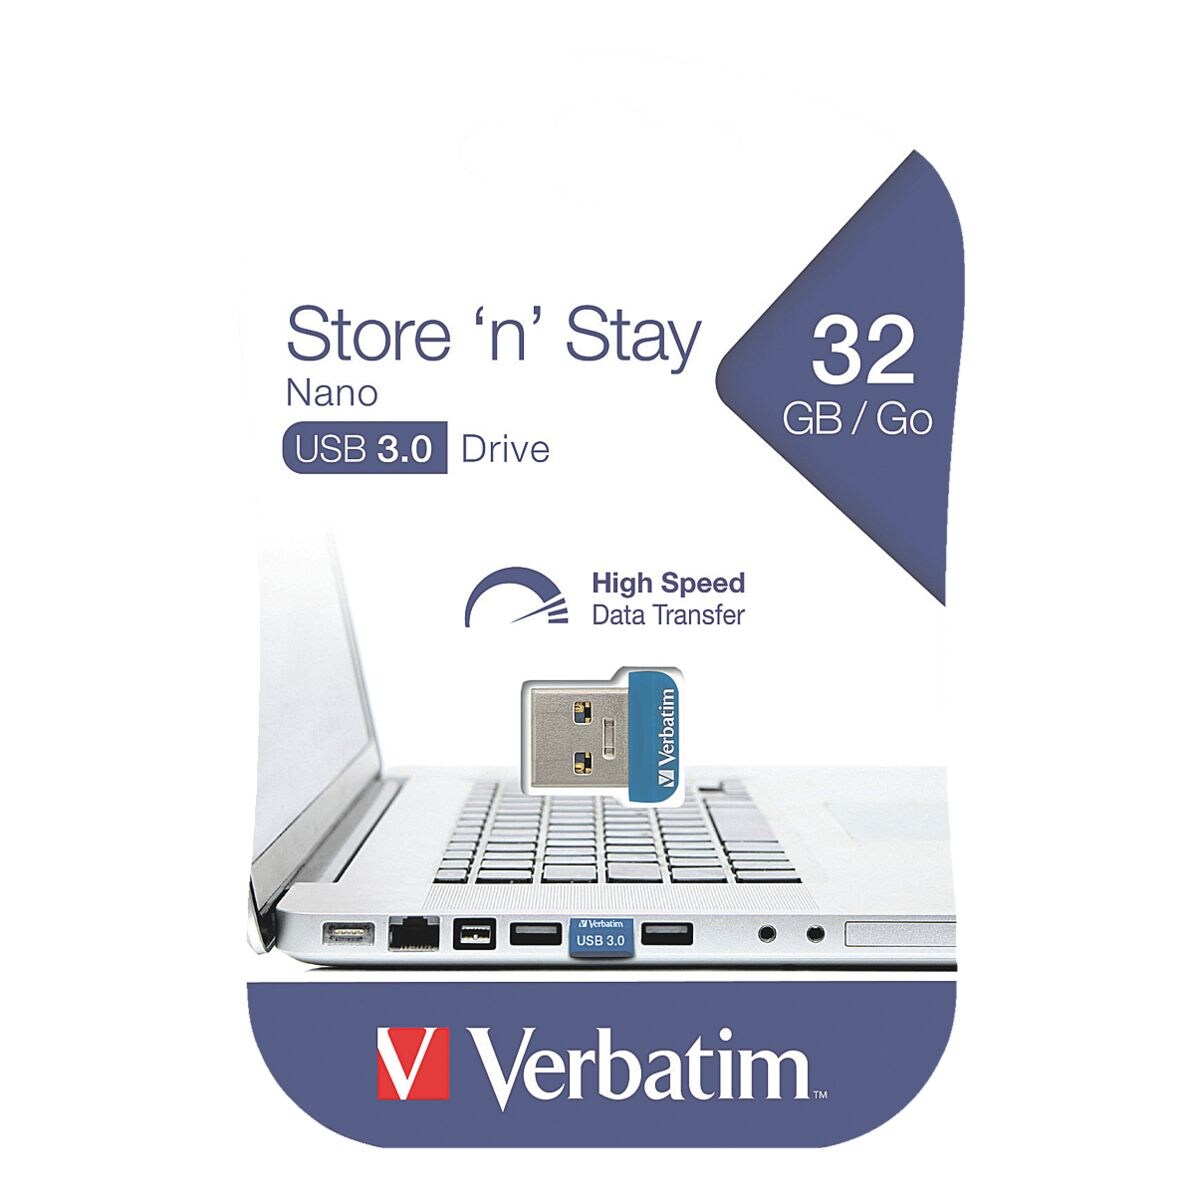 USB-Stick 32 GB Verbatim Store 'n' Stay - Nano USB 3.0